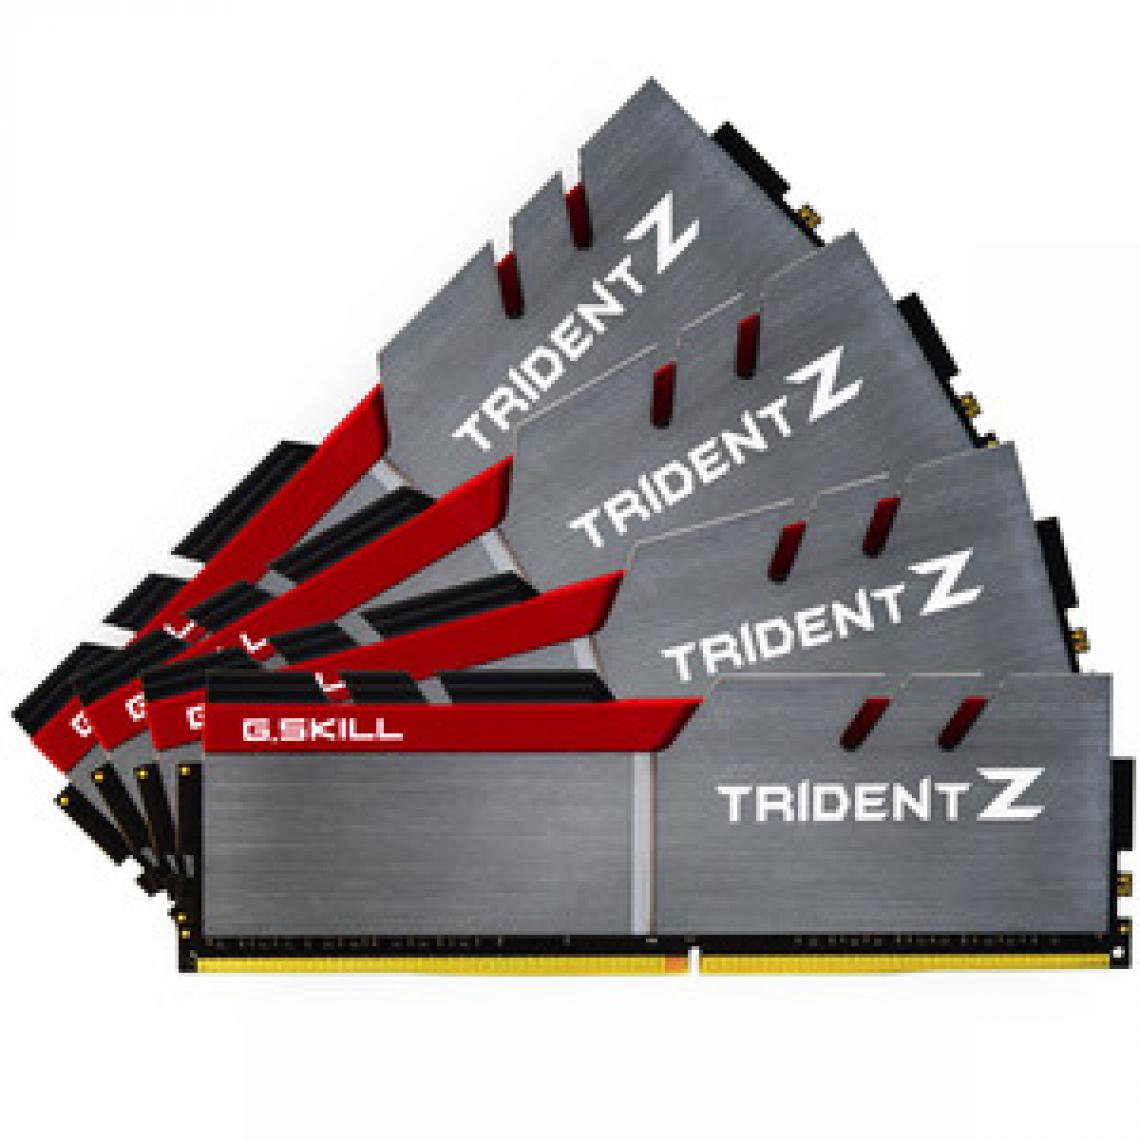 Gskill - Trident Z 64 Go (4x 16 Go) DDR4 3200 MHz CL16 - RAM PC Fixe